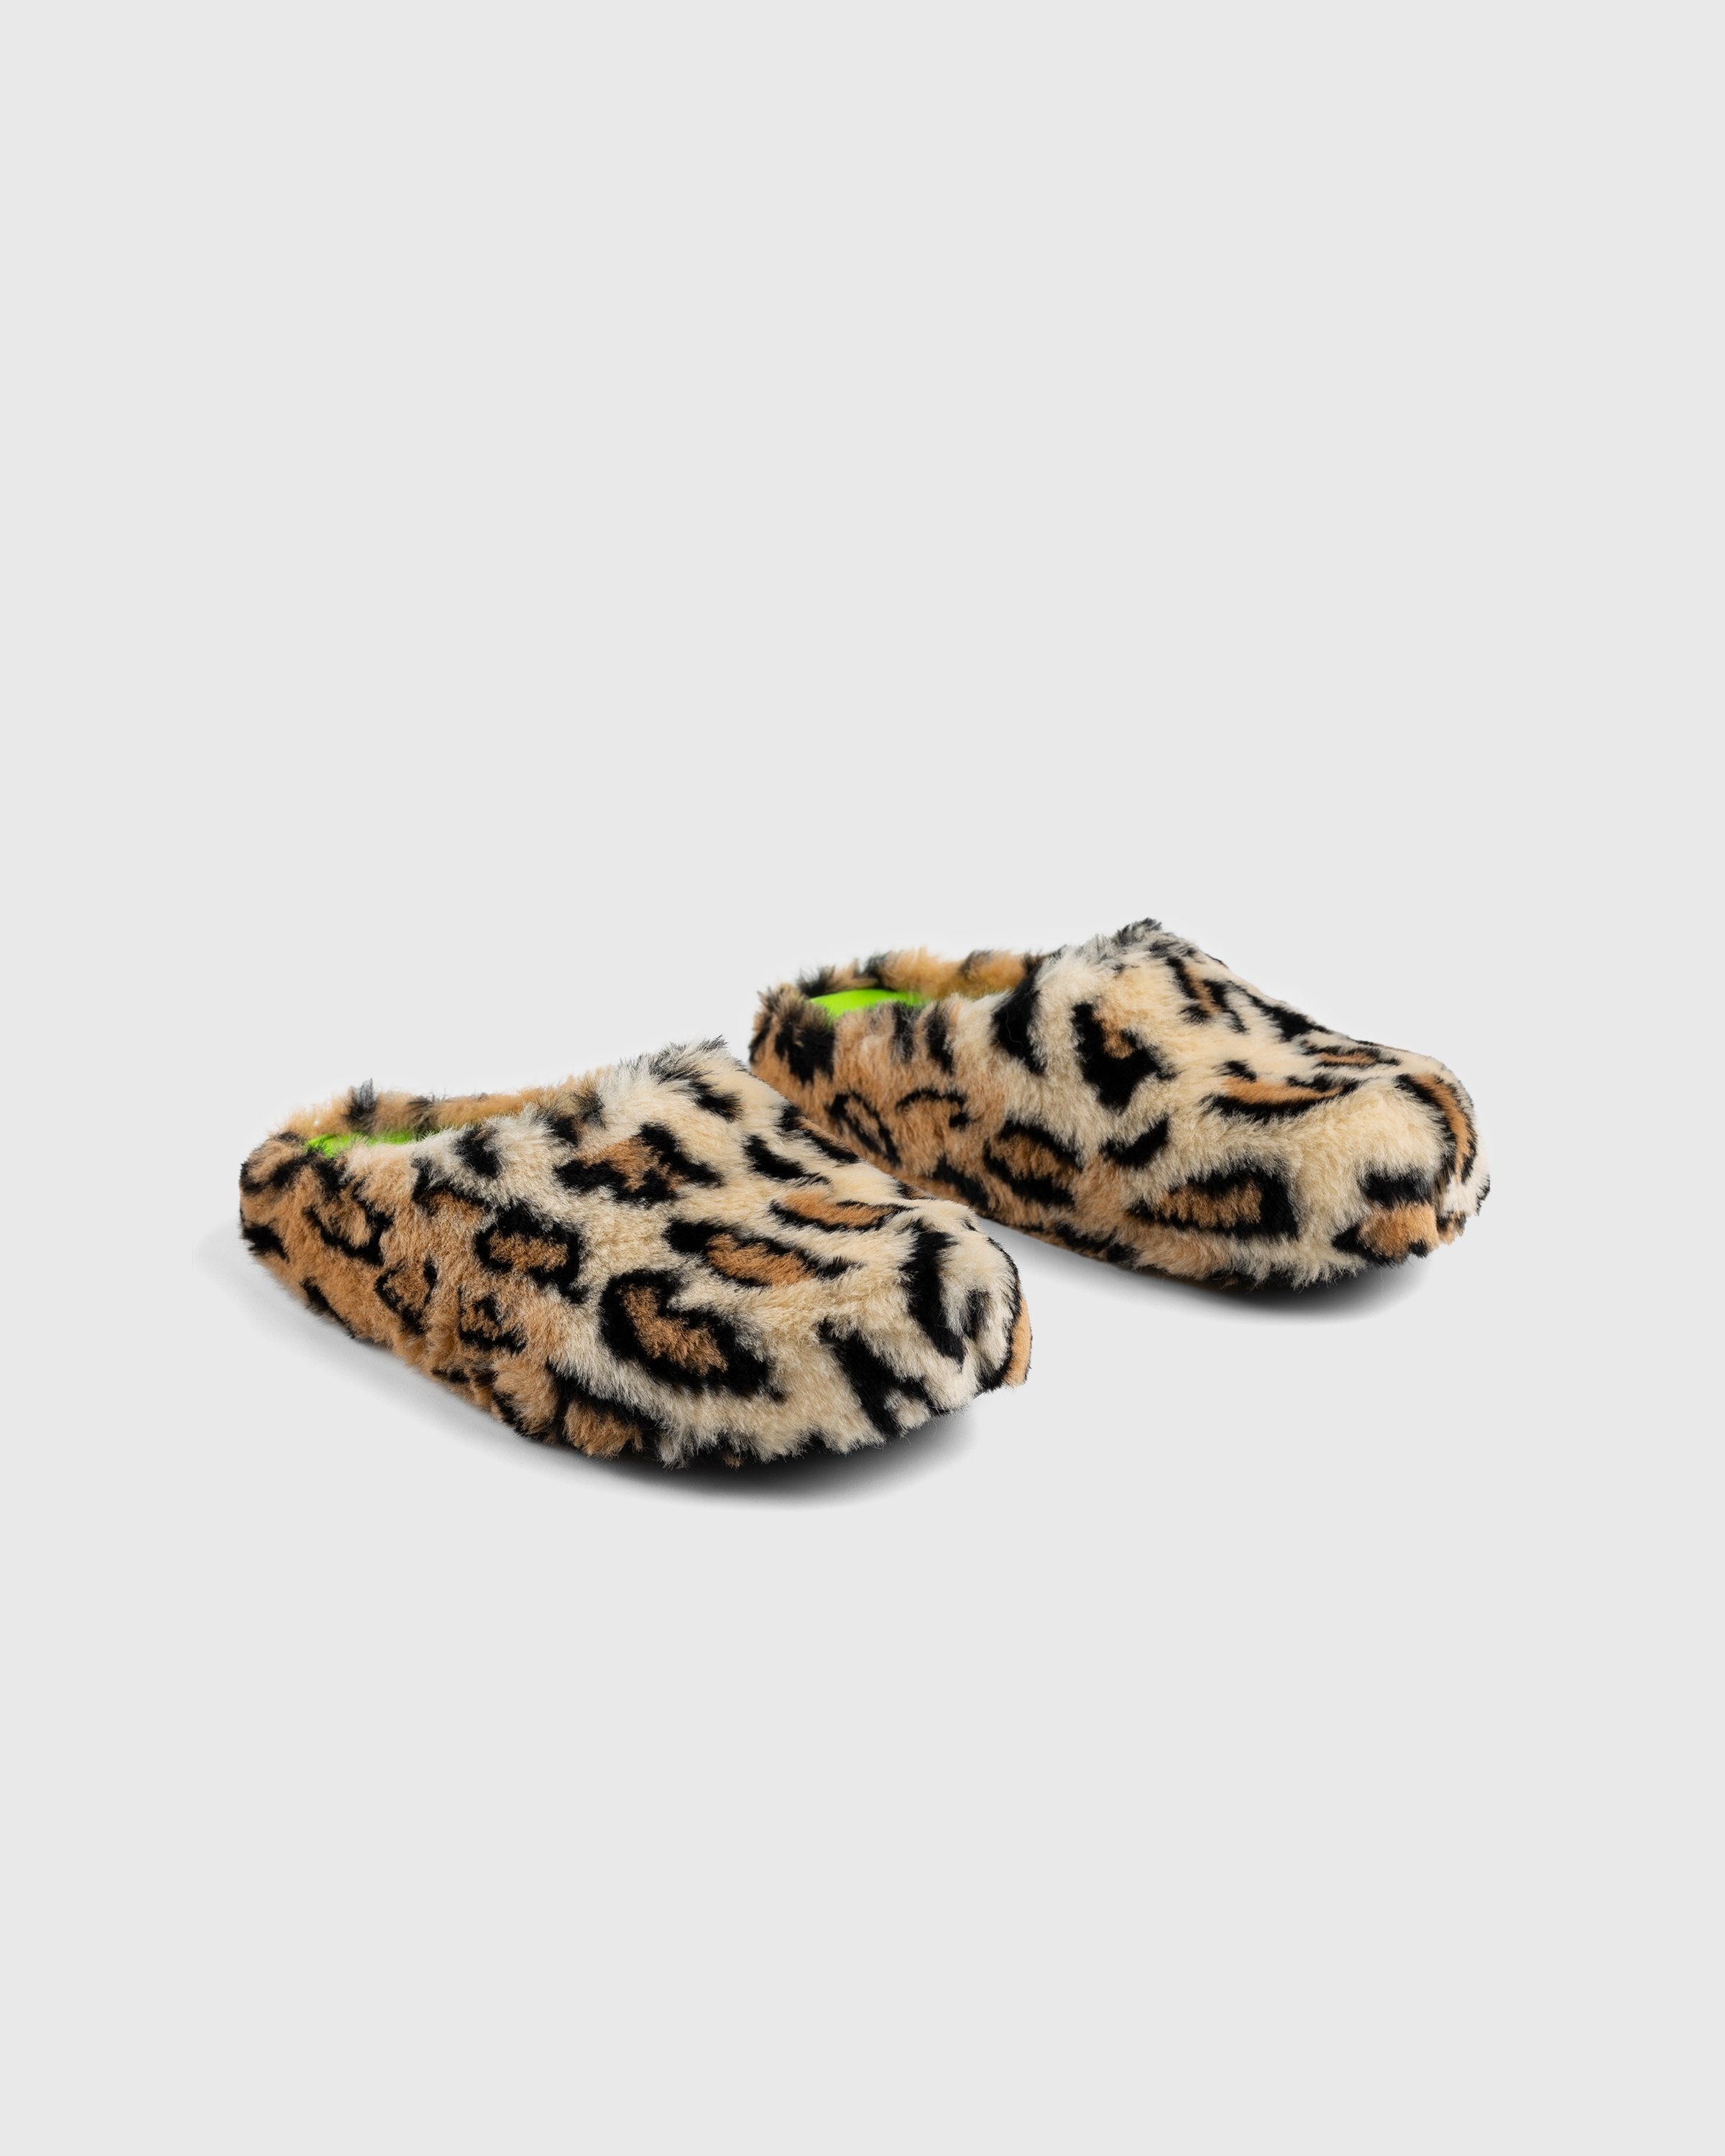 Marni – Leopard Mule Sabot - Sandals & Slides - Brown - Image 3